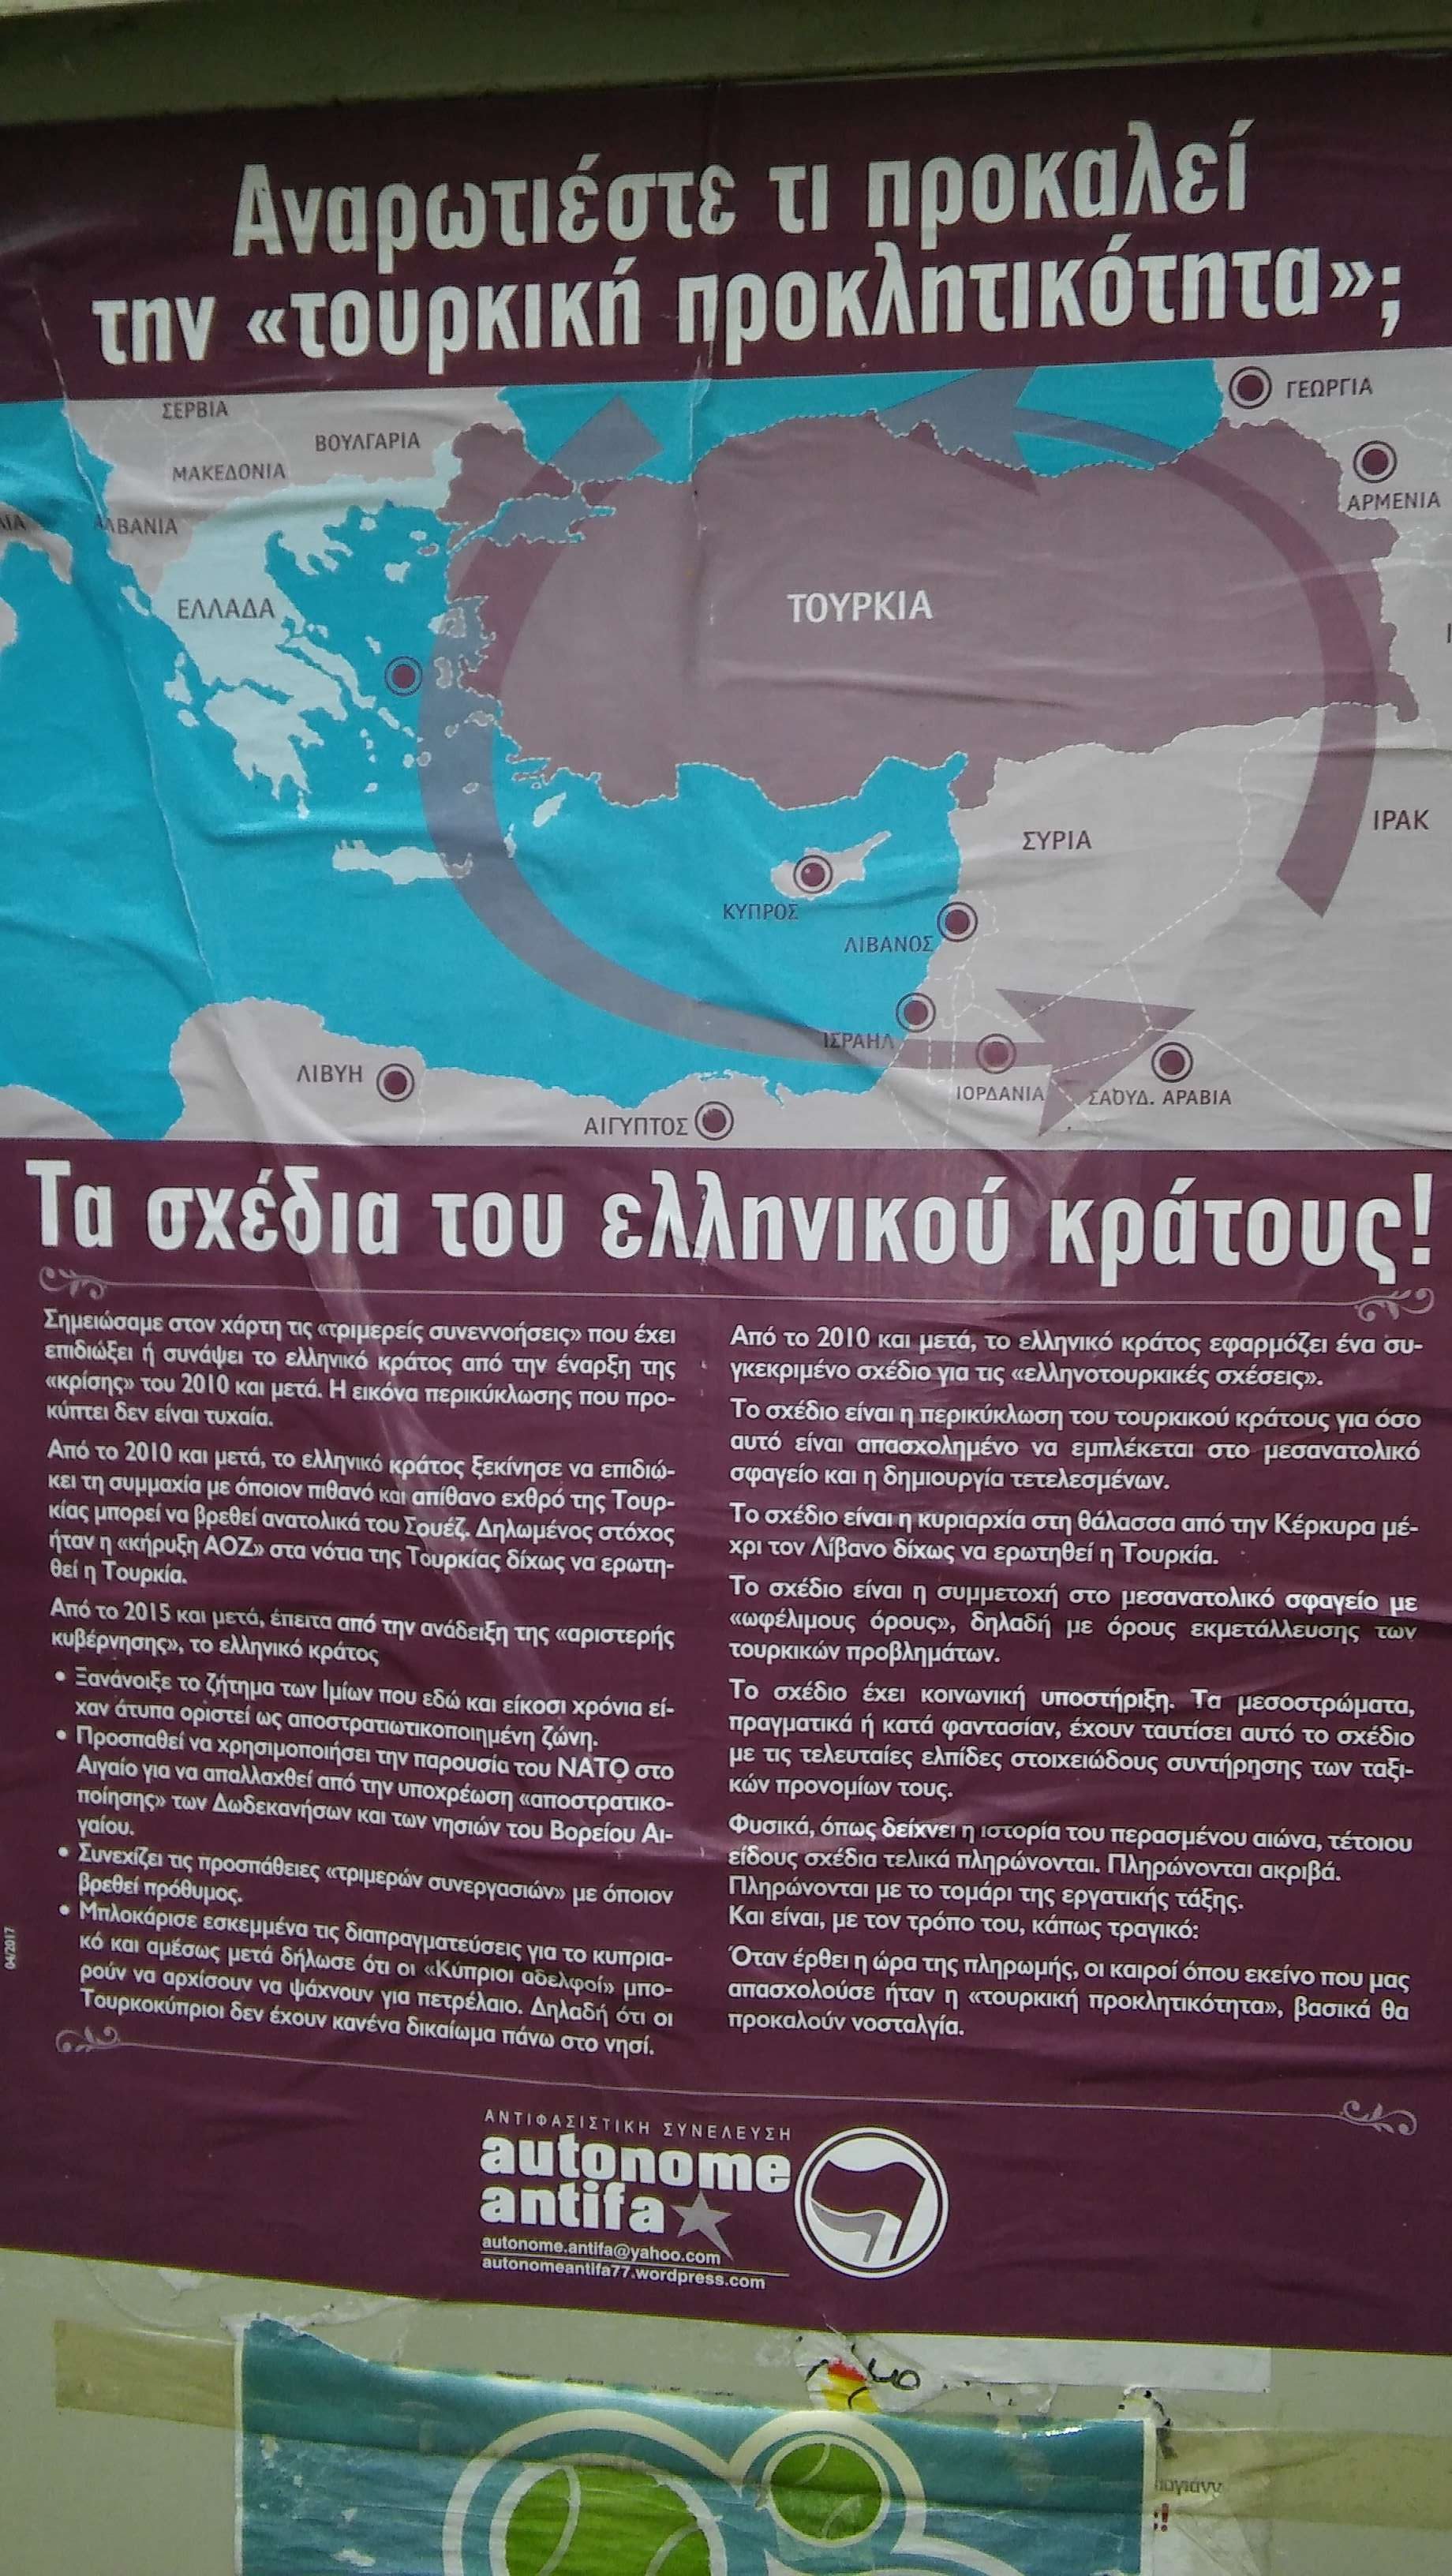 Το θέμα με τις φιλοτουρκικές αφίσες στην Αθήνα στον Antenna